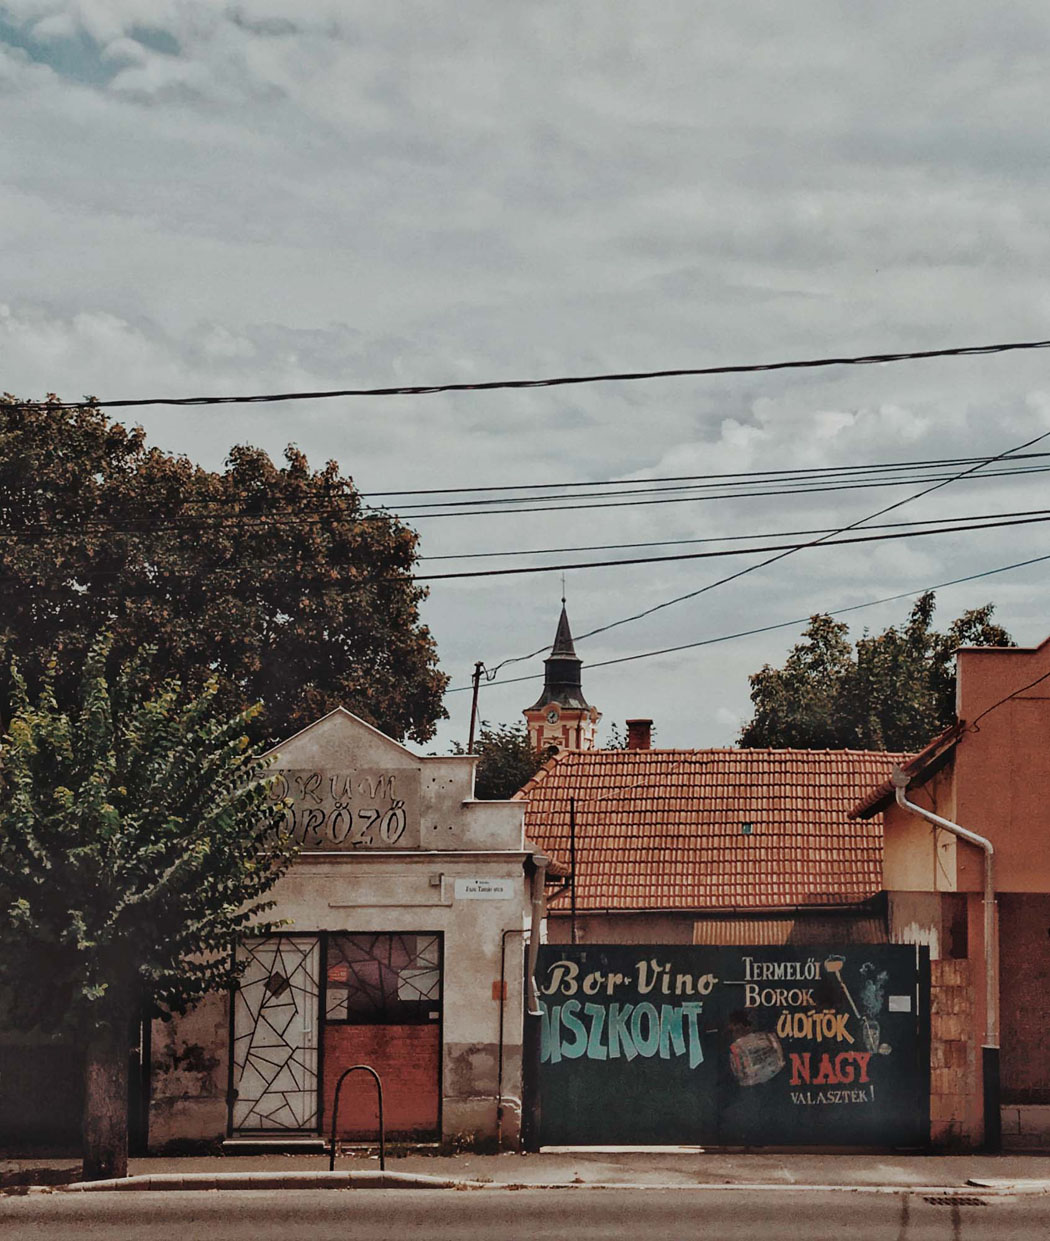 匈牙利小城还乡日记 记录一段美好甜蜜的旅程